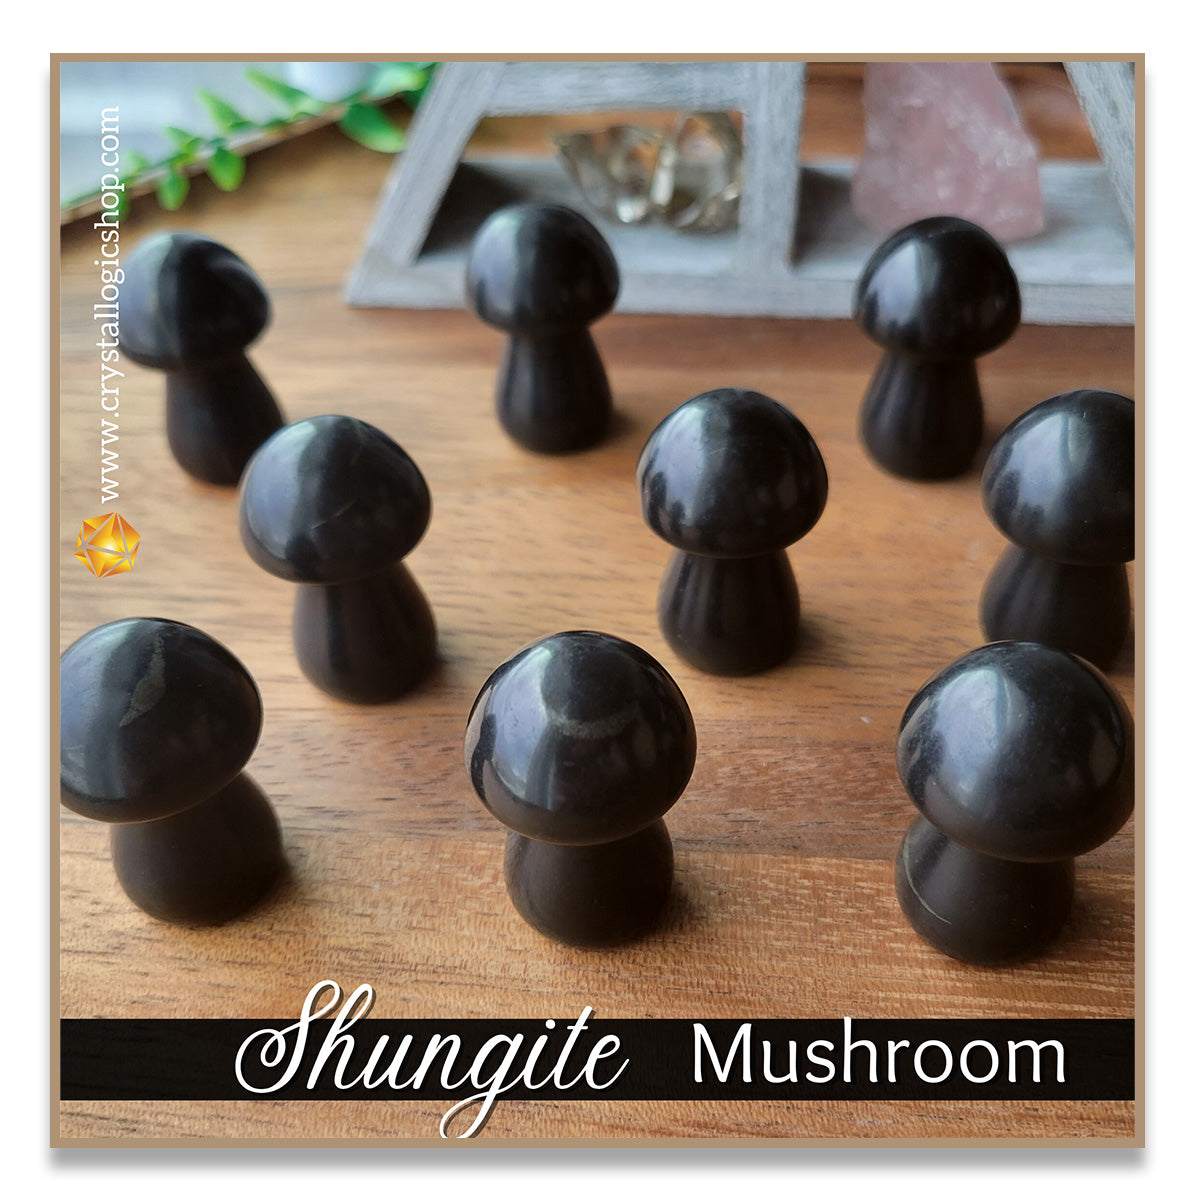 Shungite Mushroom